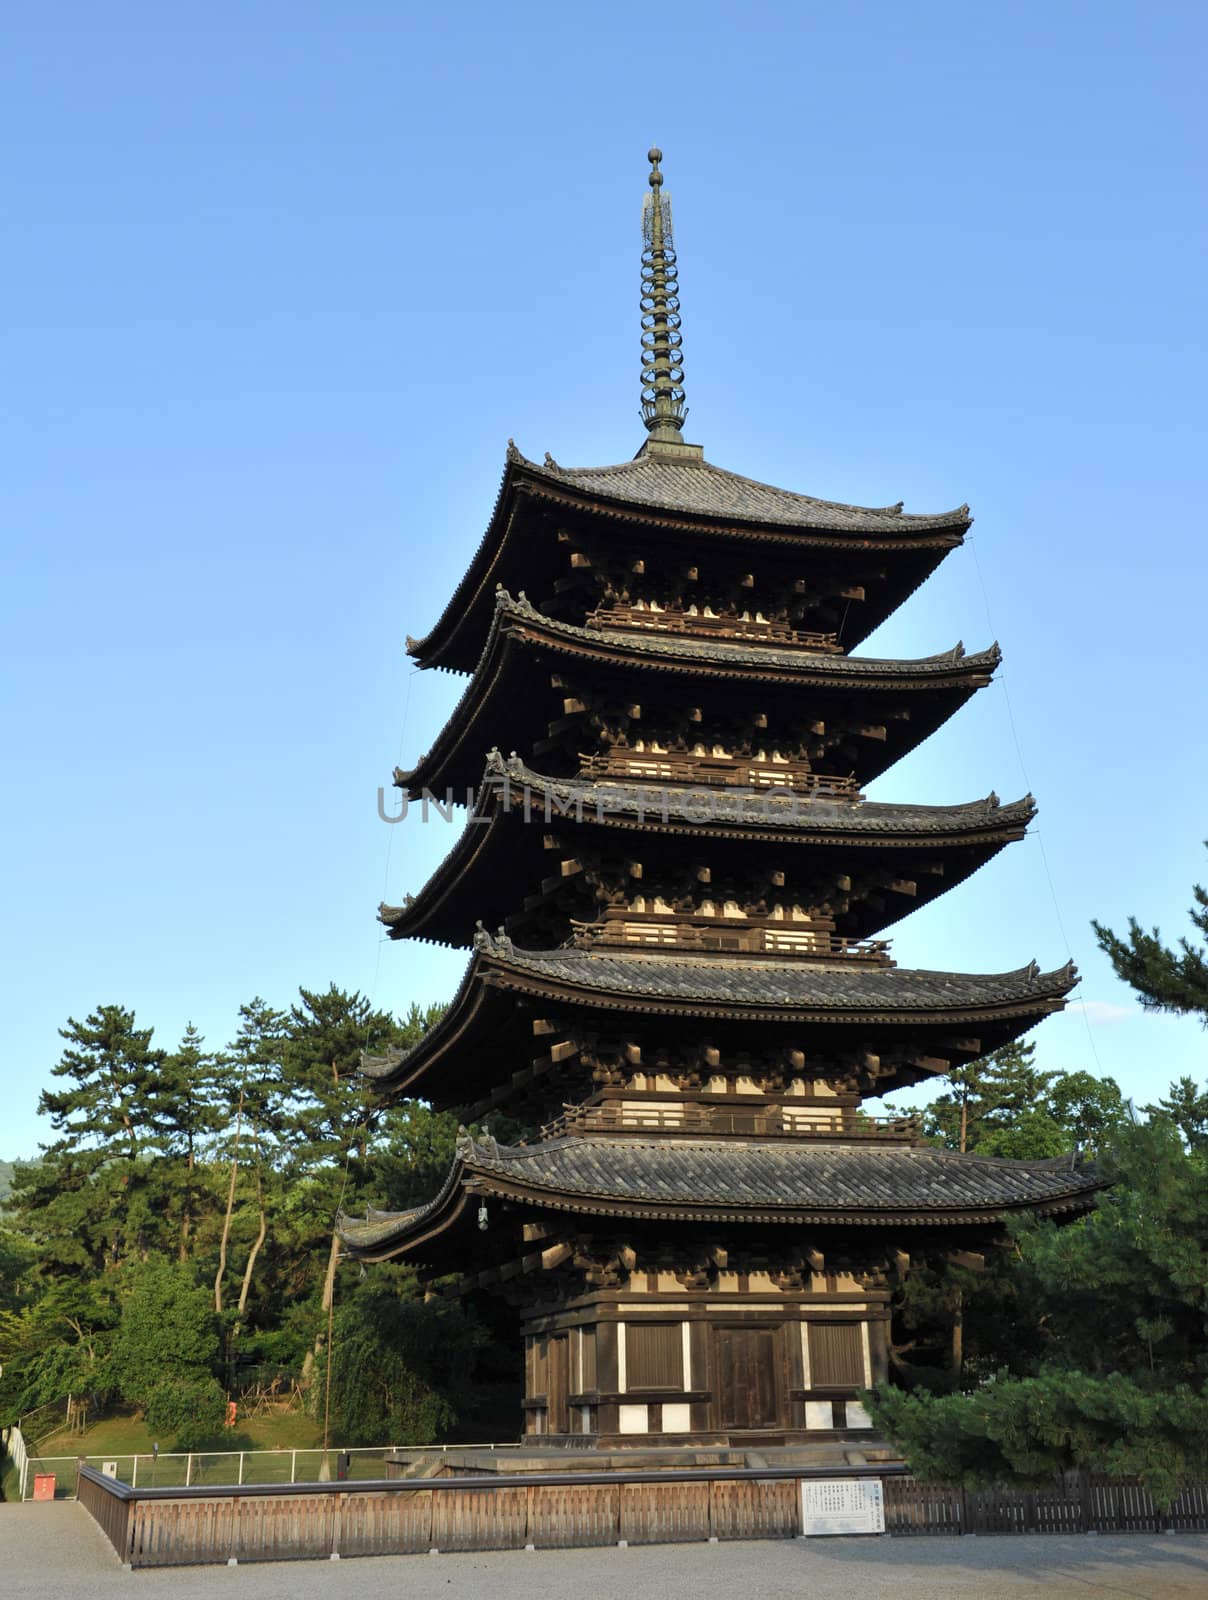 Five-storied pagoda of the Kofuku-ji temple at Nara, Japan